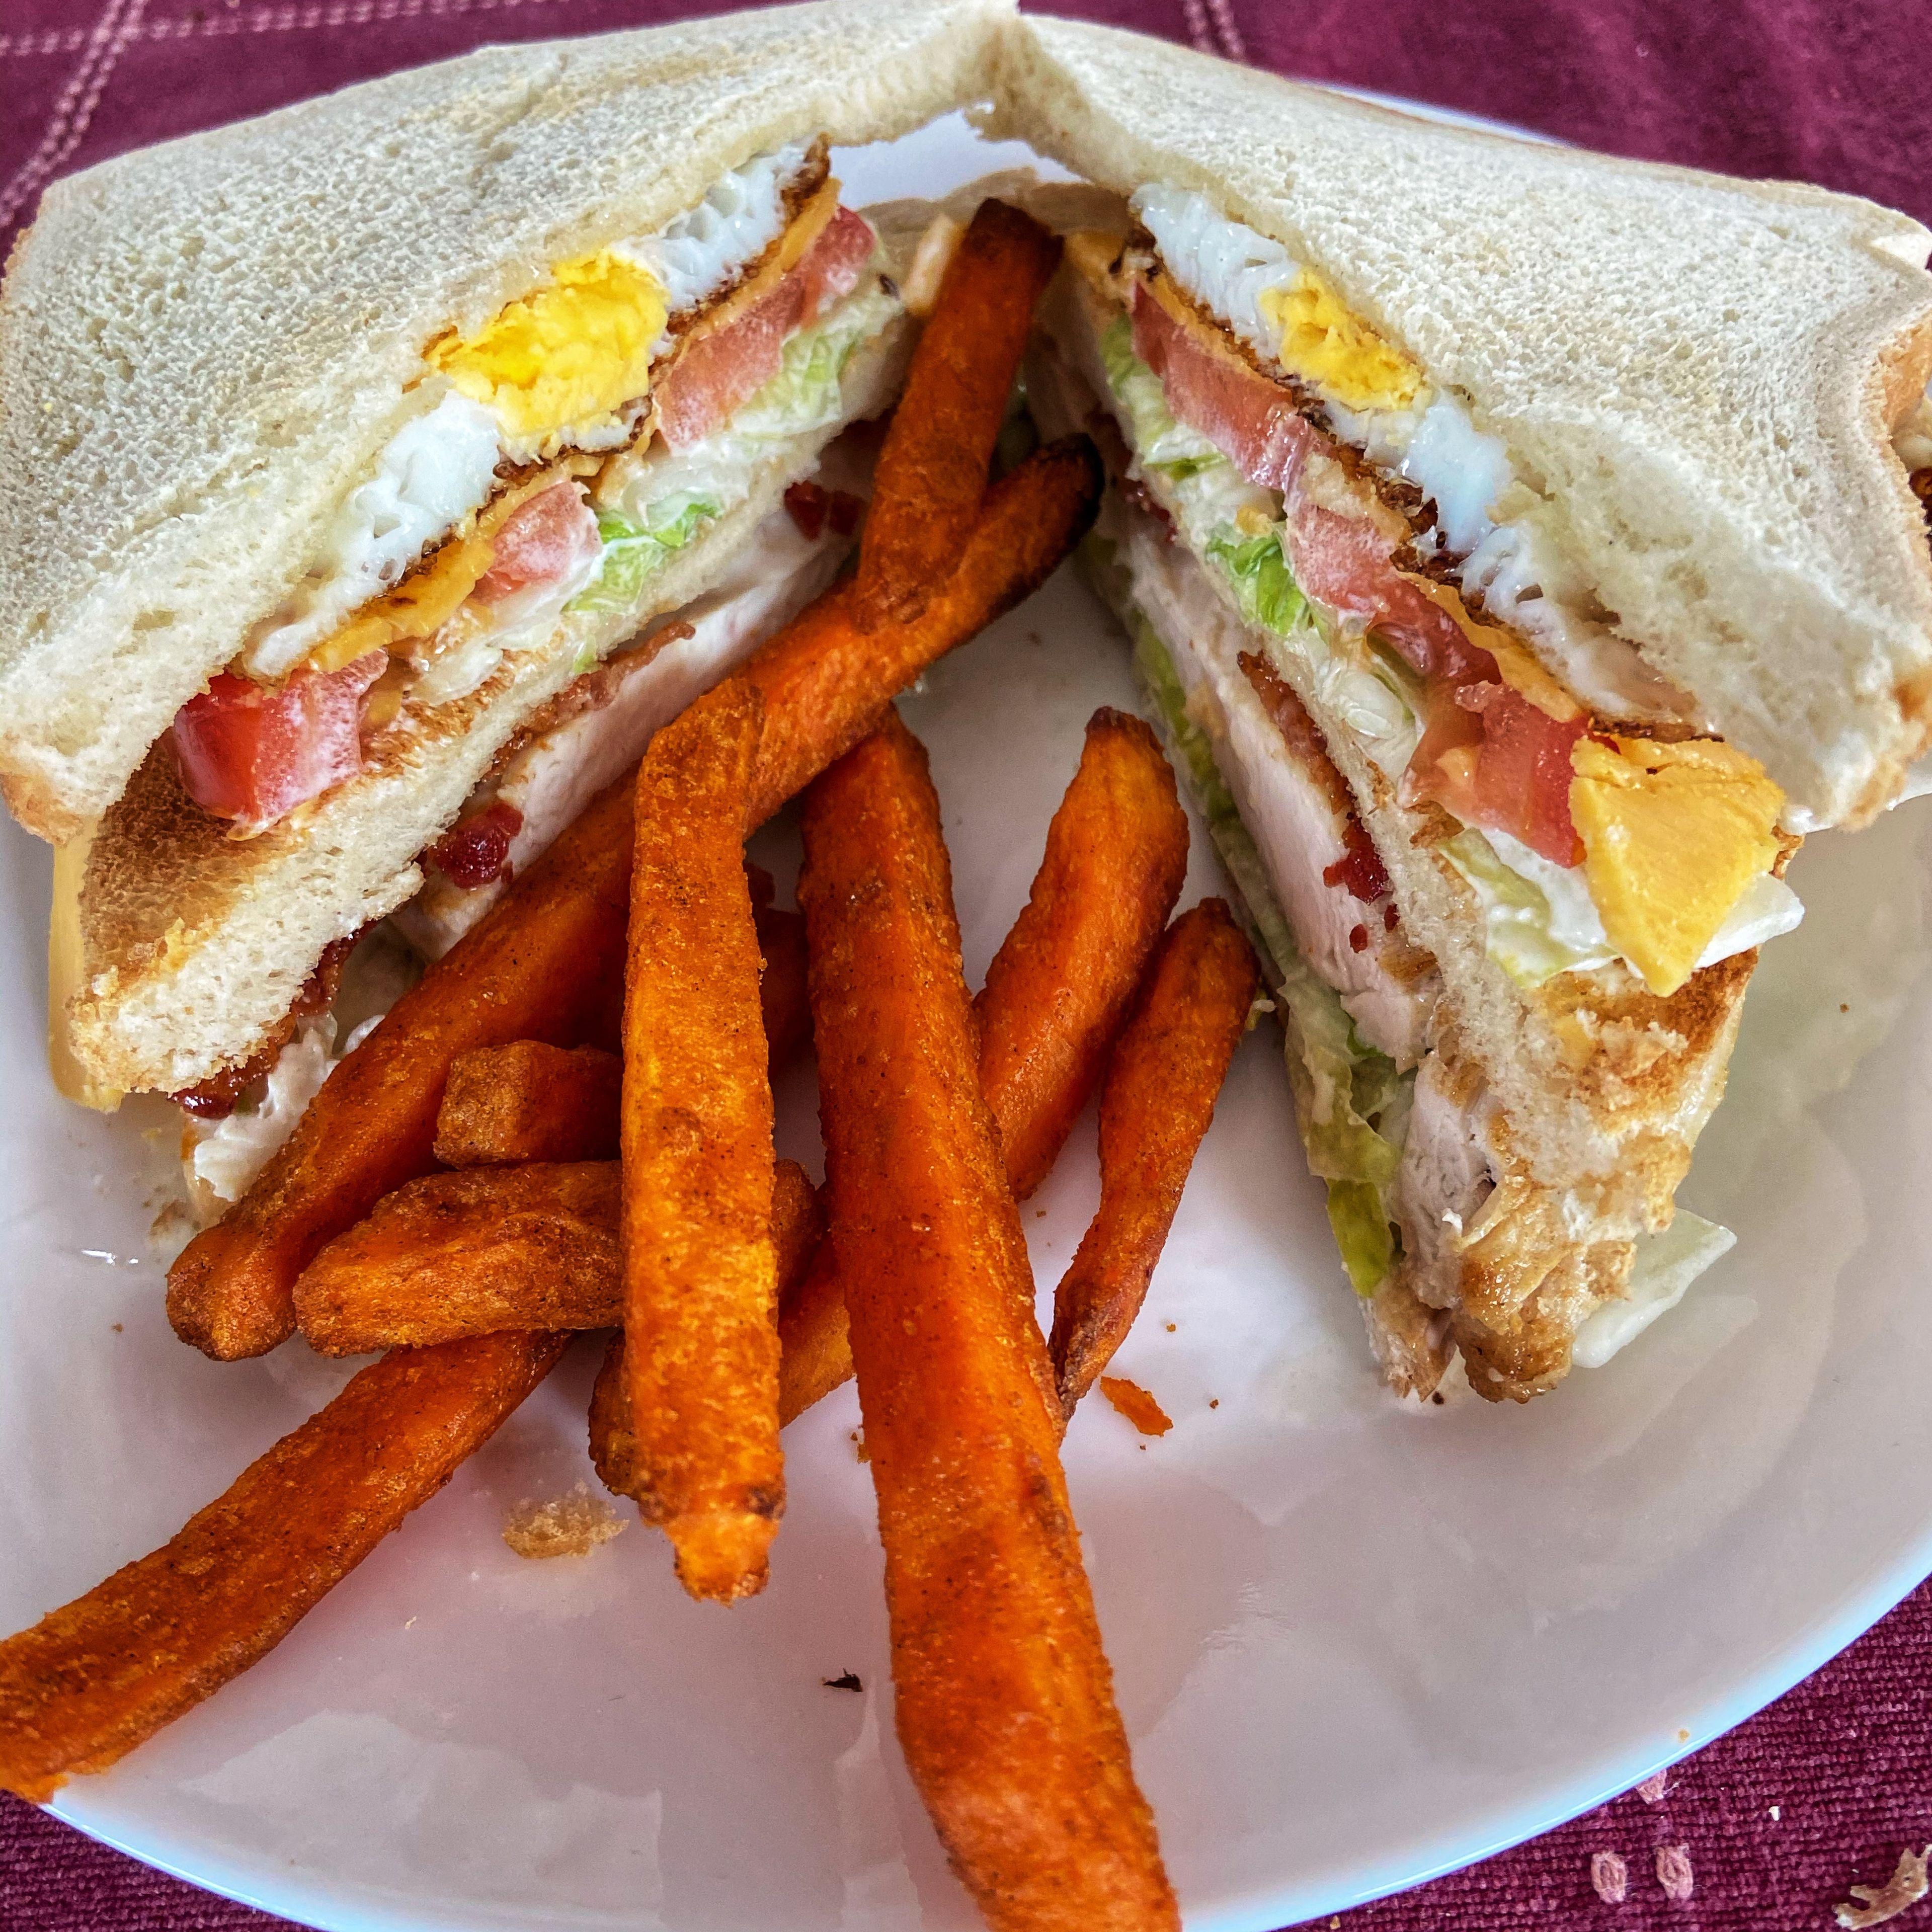 Decadent Club Sandwich